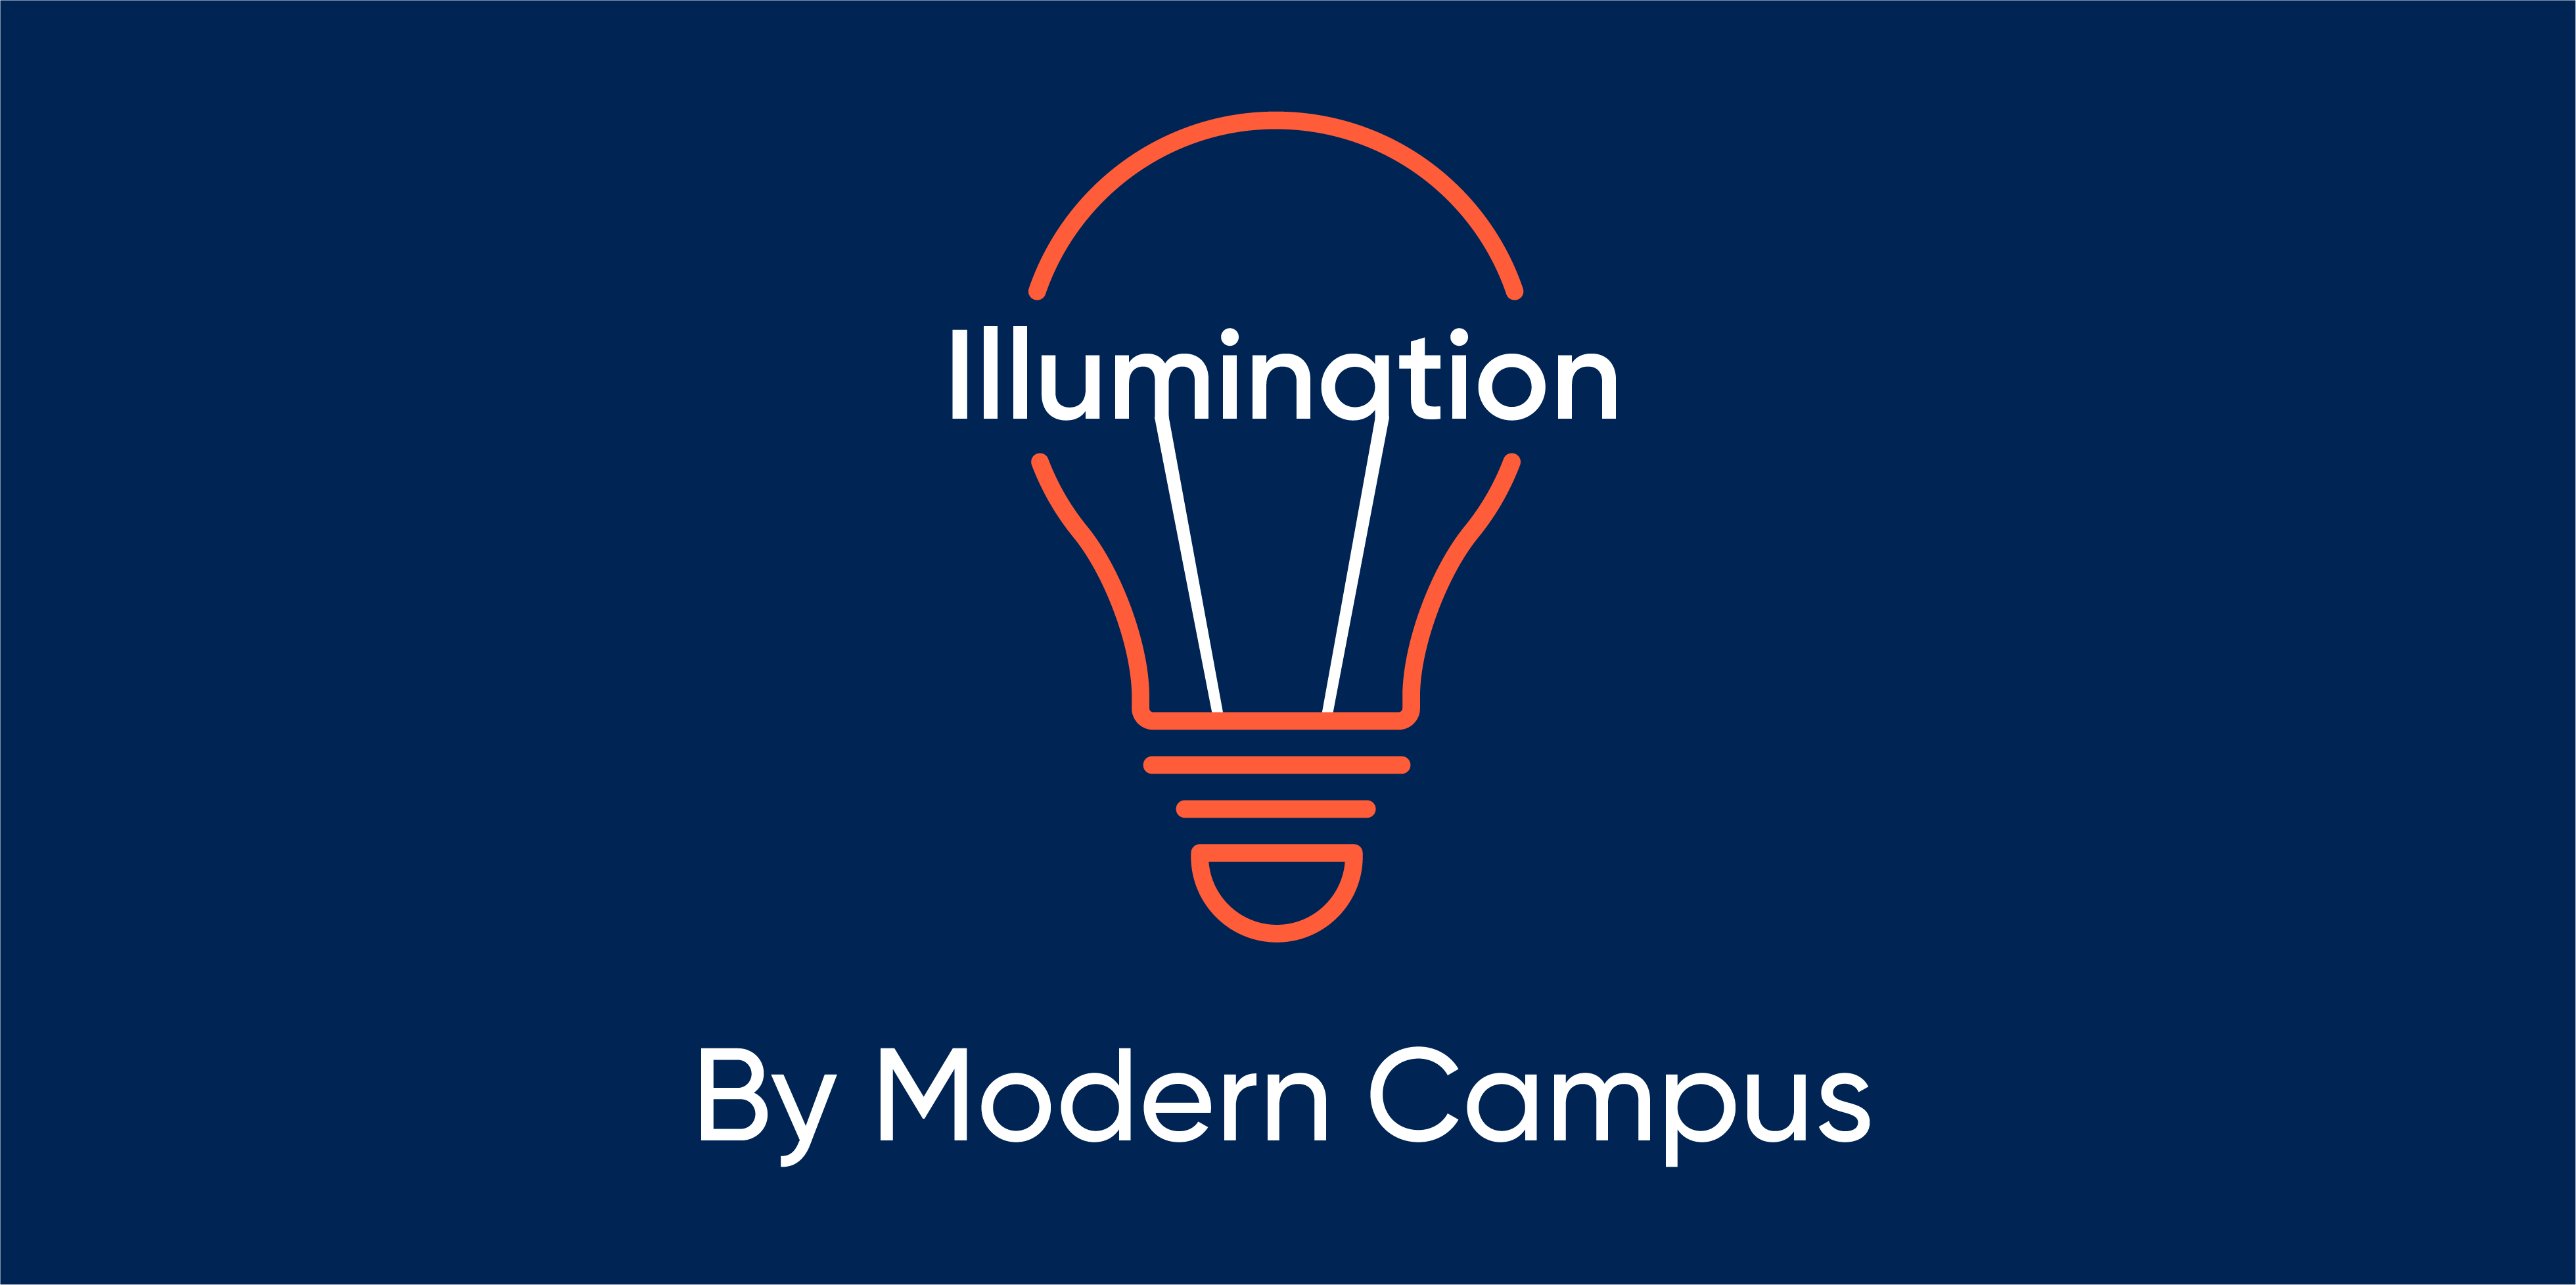 Episode 144: Illumination by Modern Campus